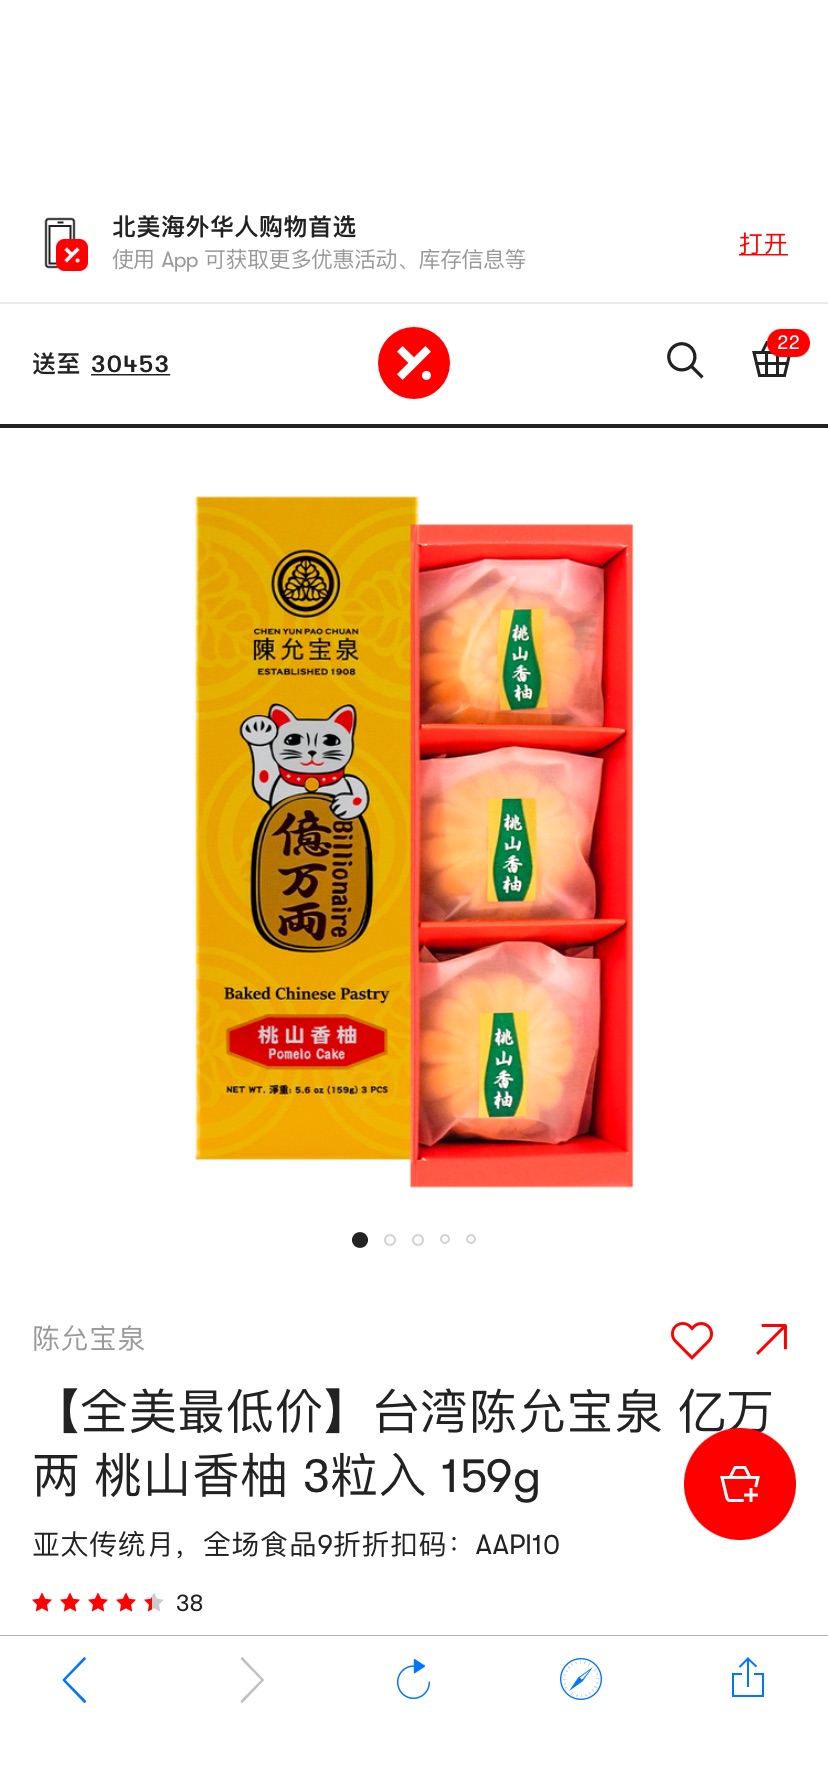 【全美最低价】台湾陈允宝泉 亿万两 桃山香柚 3粒入 159g - 亚米